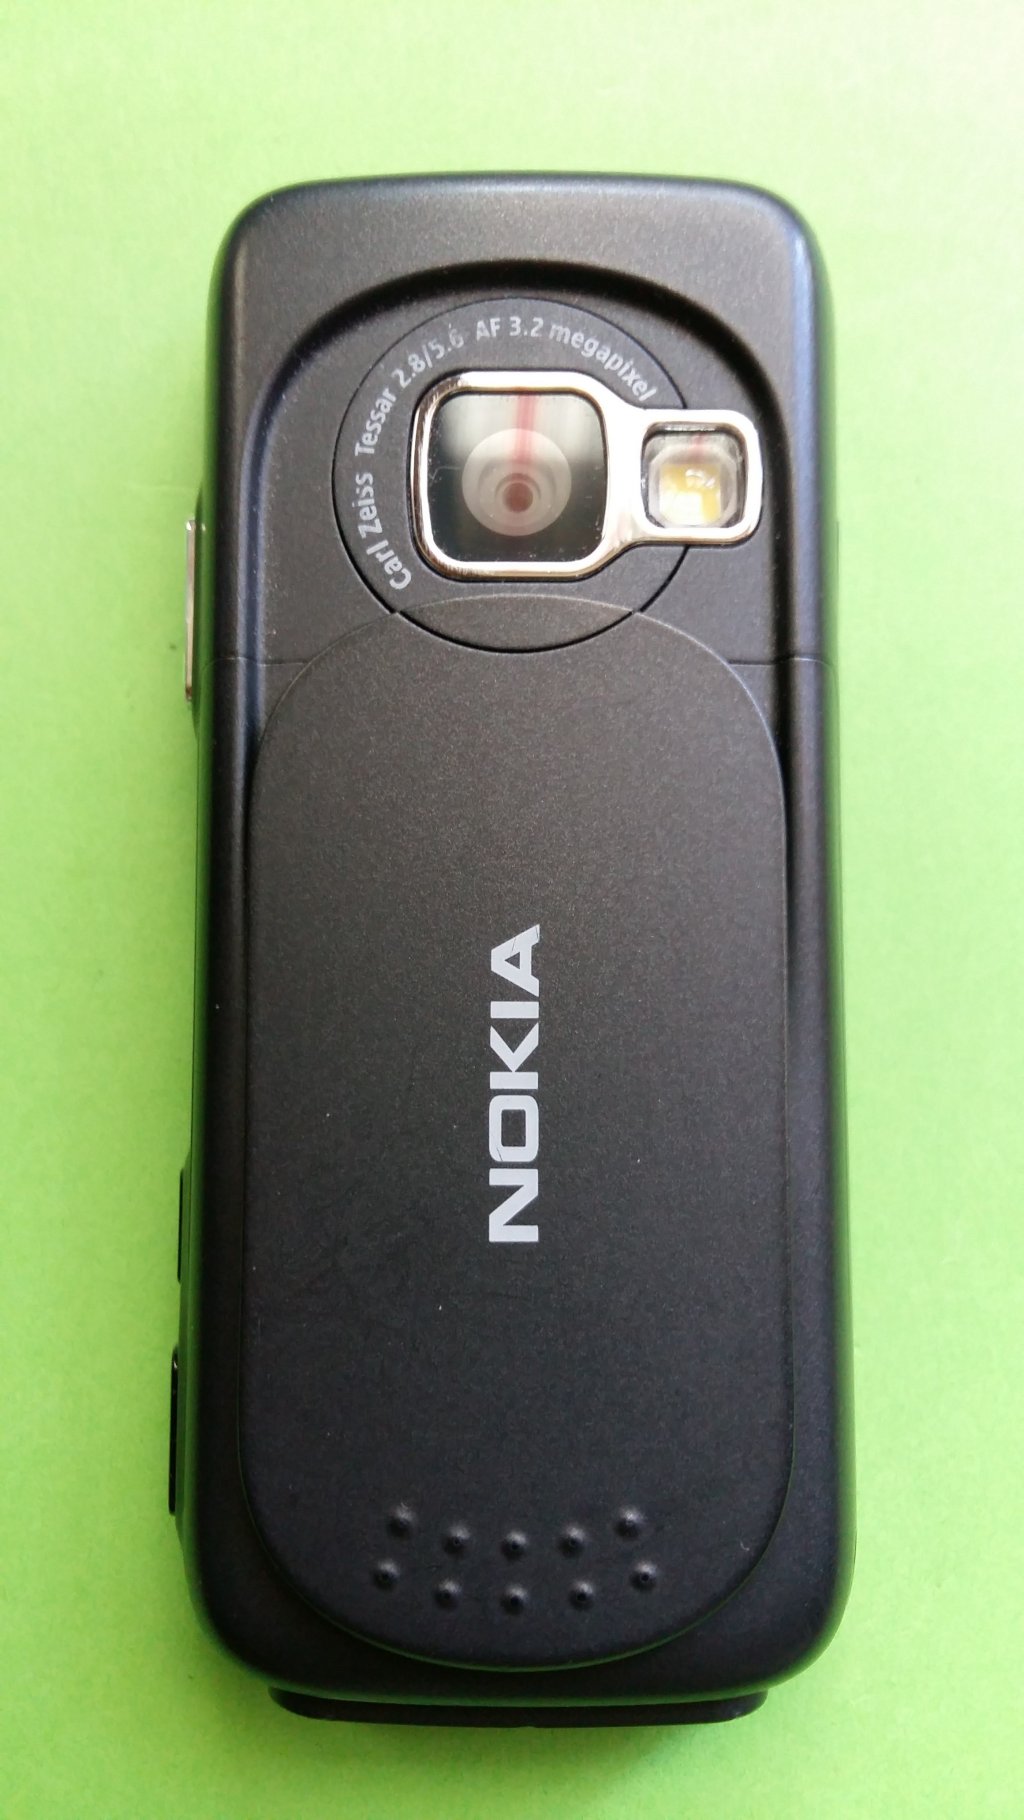 image-7431991-Nokia_N73-1_(4)3.w640.jpg